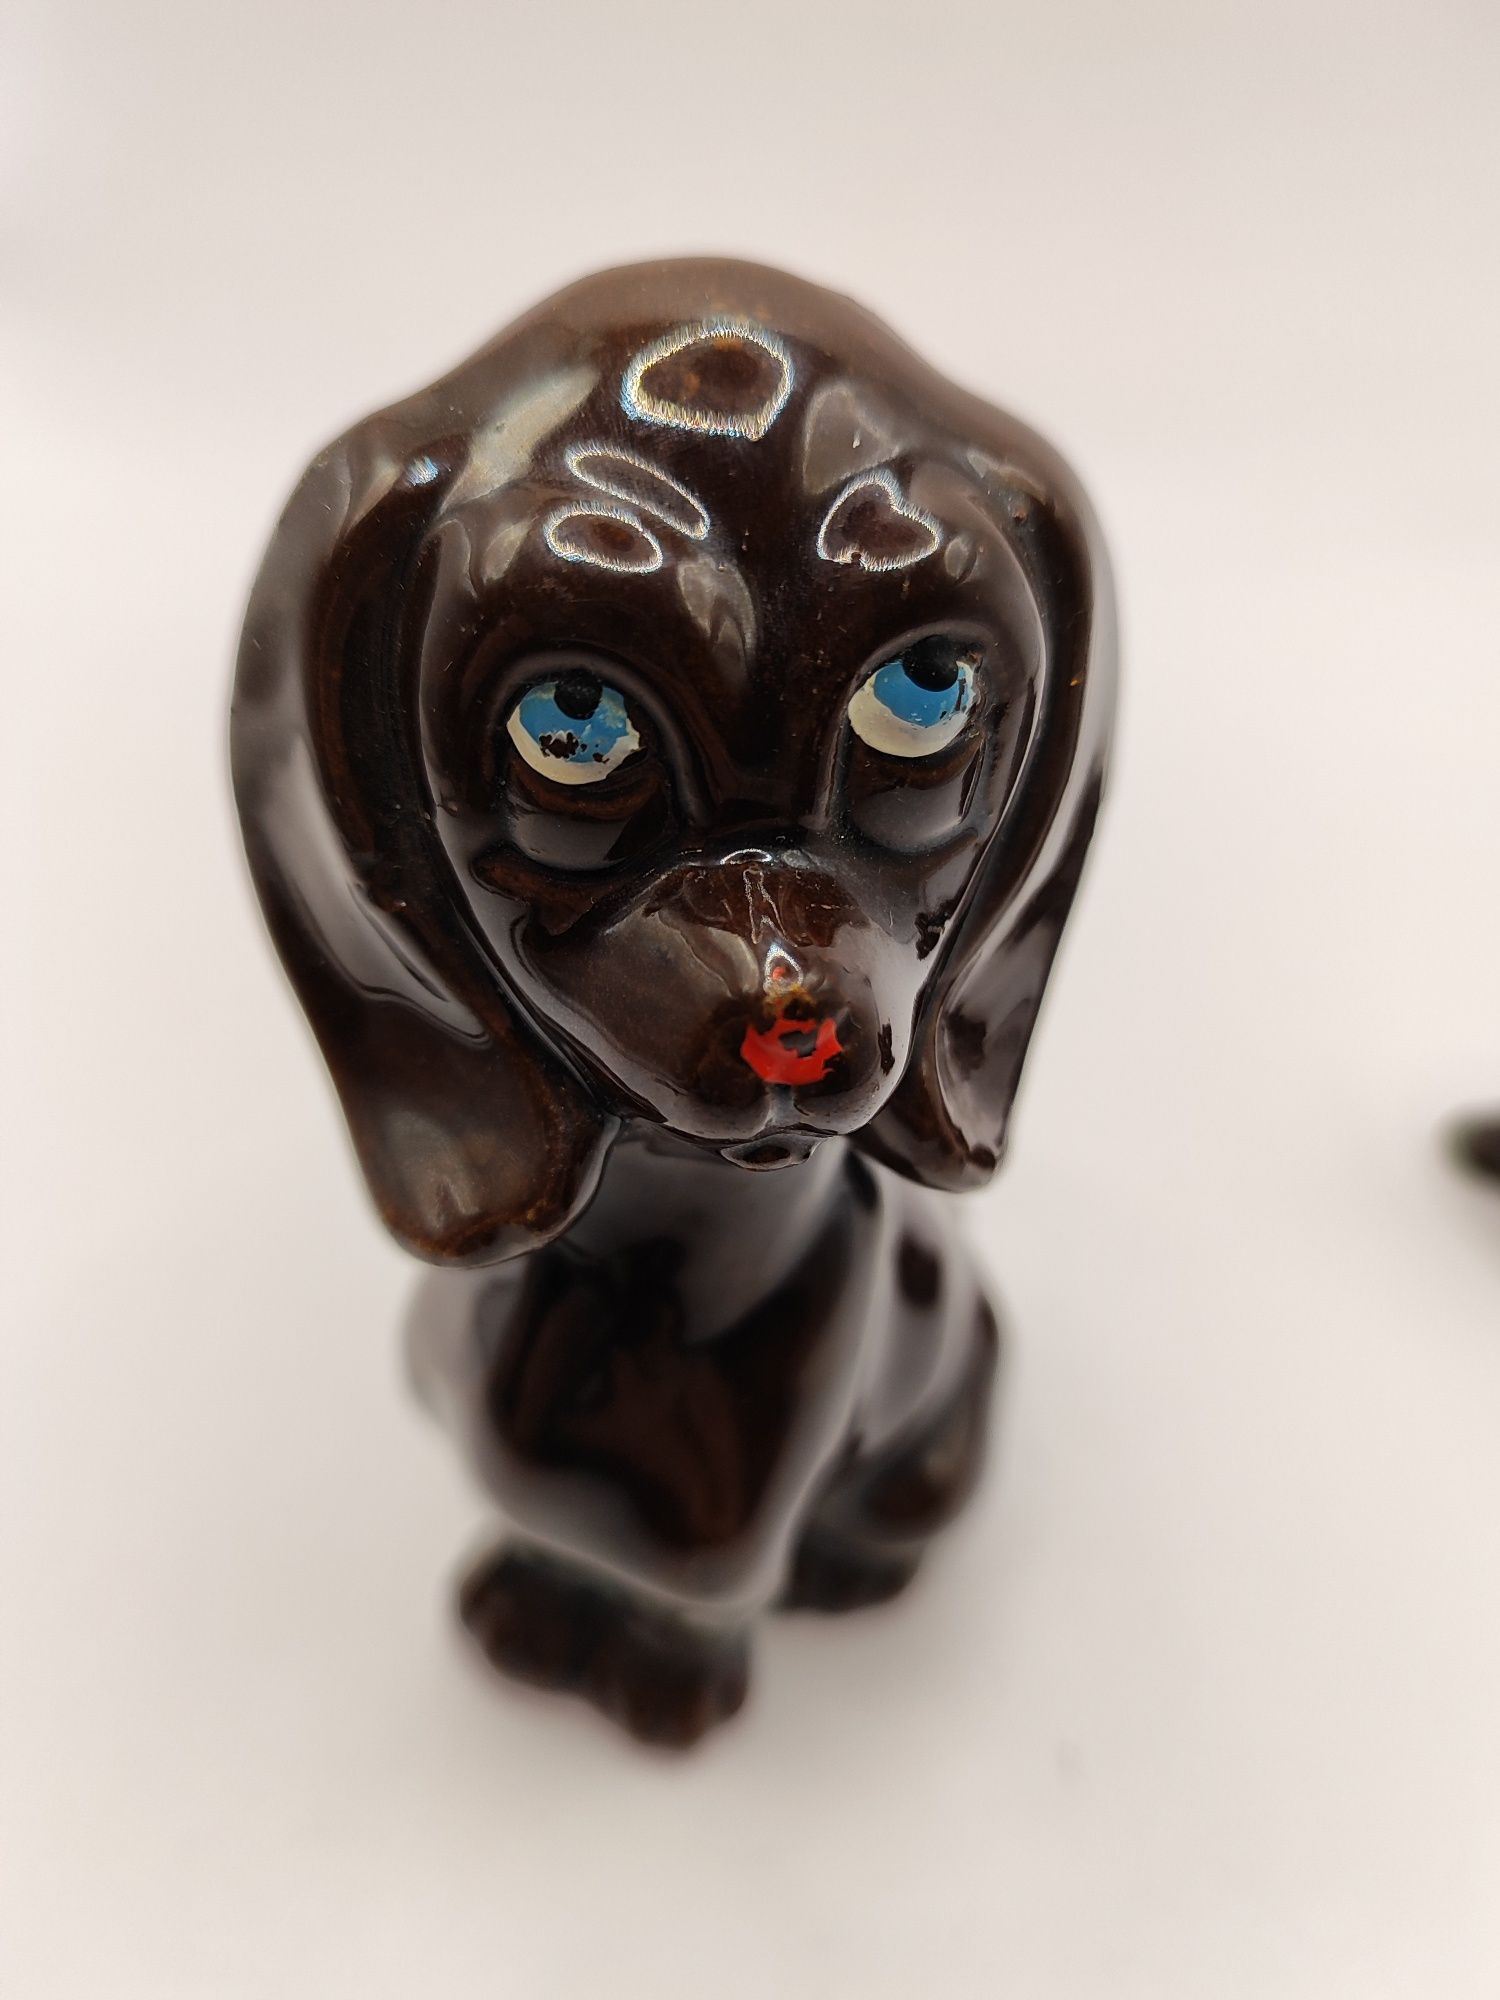 Ceramiczne figurki pies i szczenięta kolekcja brązowe pieski spaniel